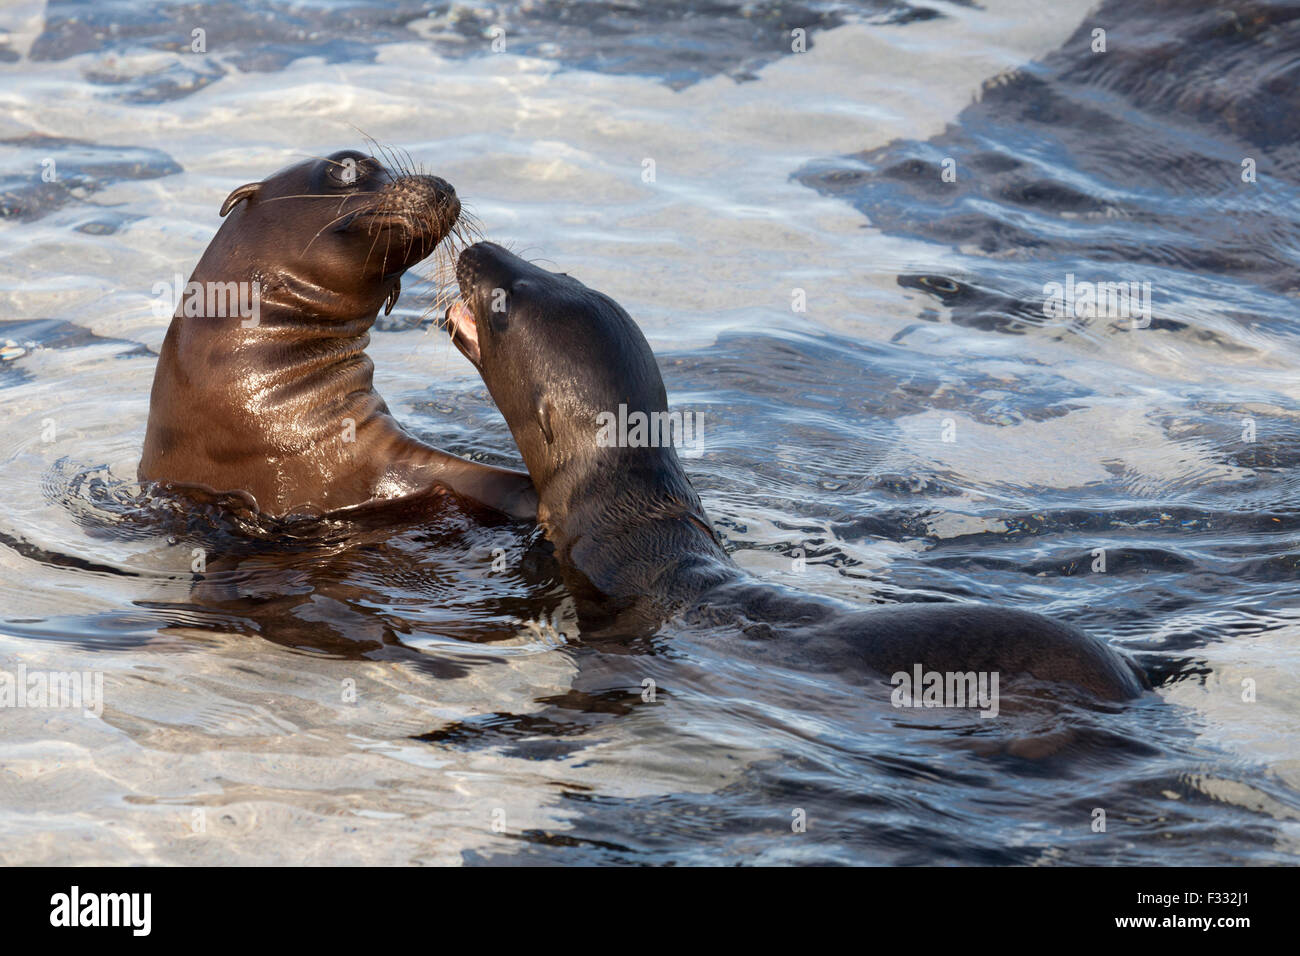 Galapagos Sea Lions (Zalophus wollebaeki) playing in ocean Stock Photo